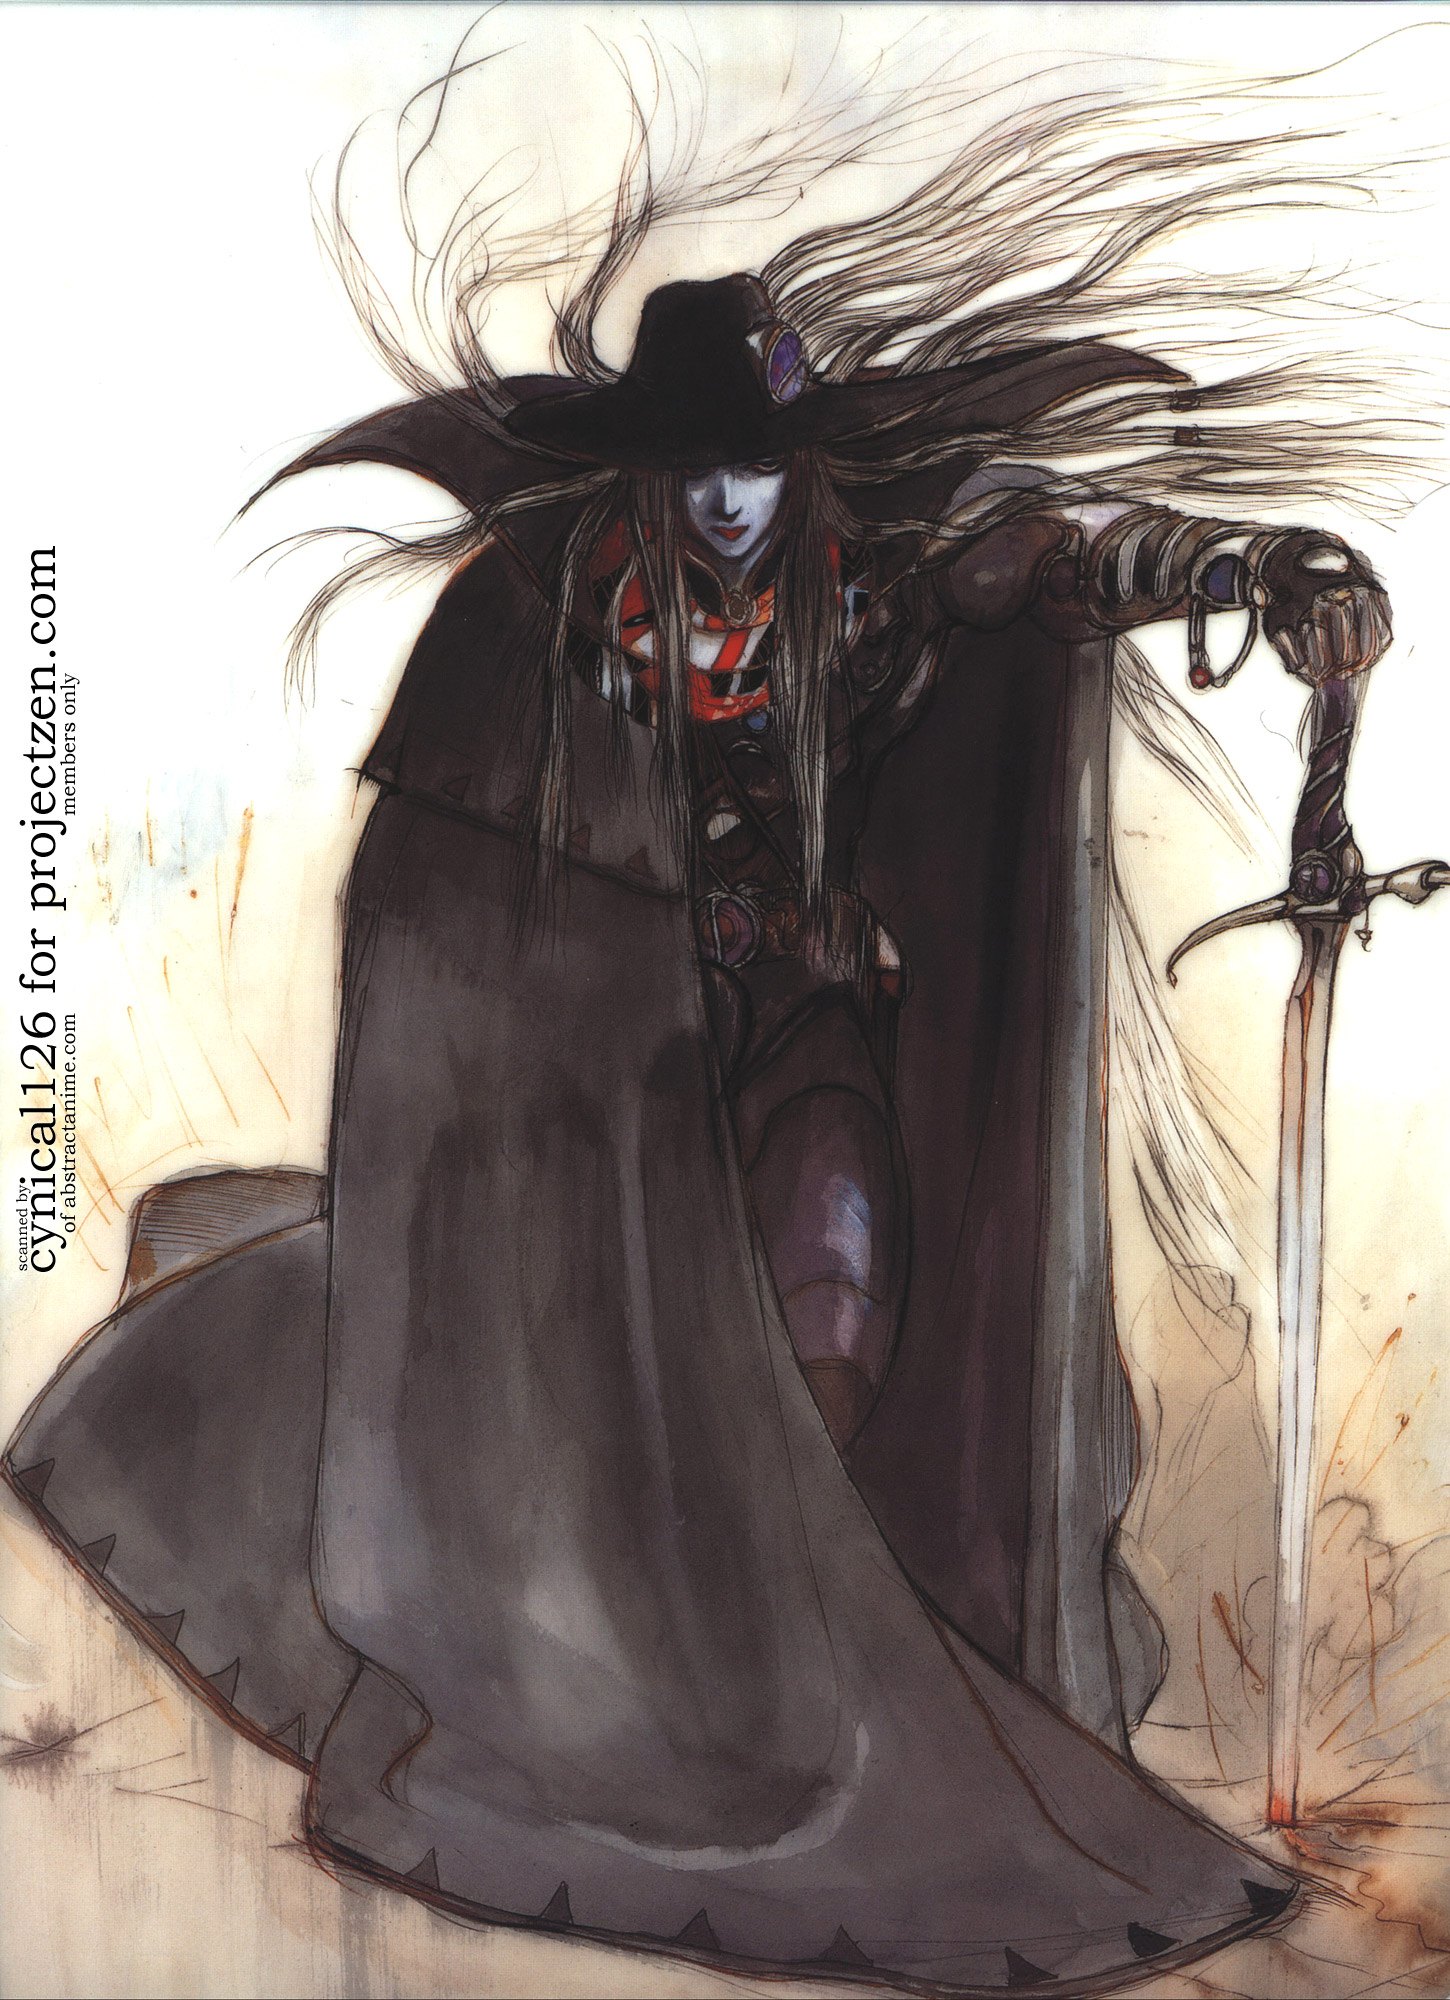 Art of Vampire Hunter D: Bloodlust